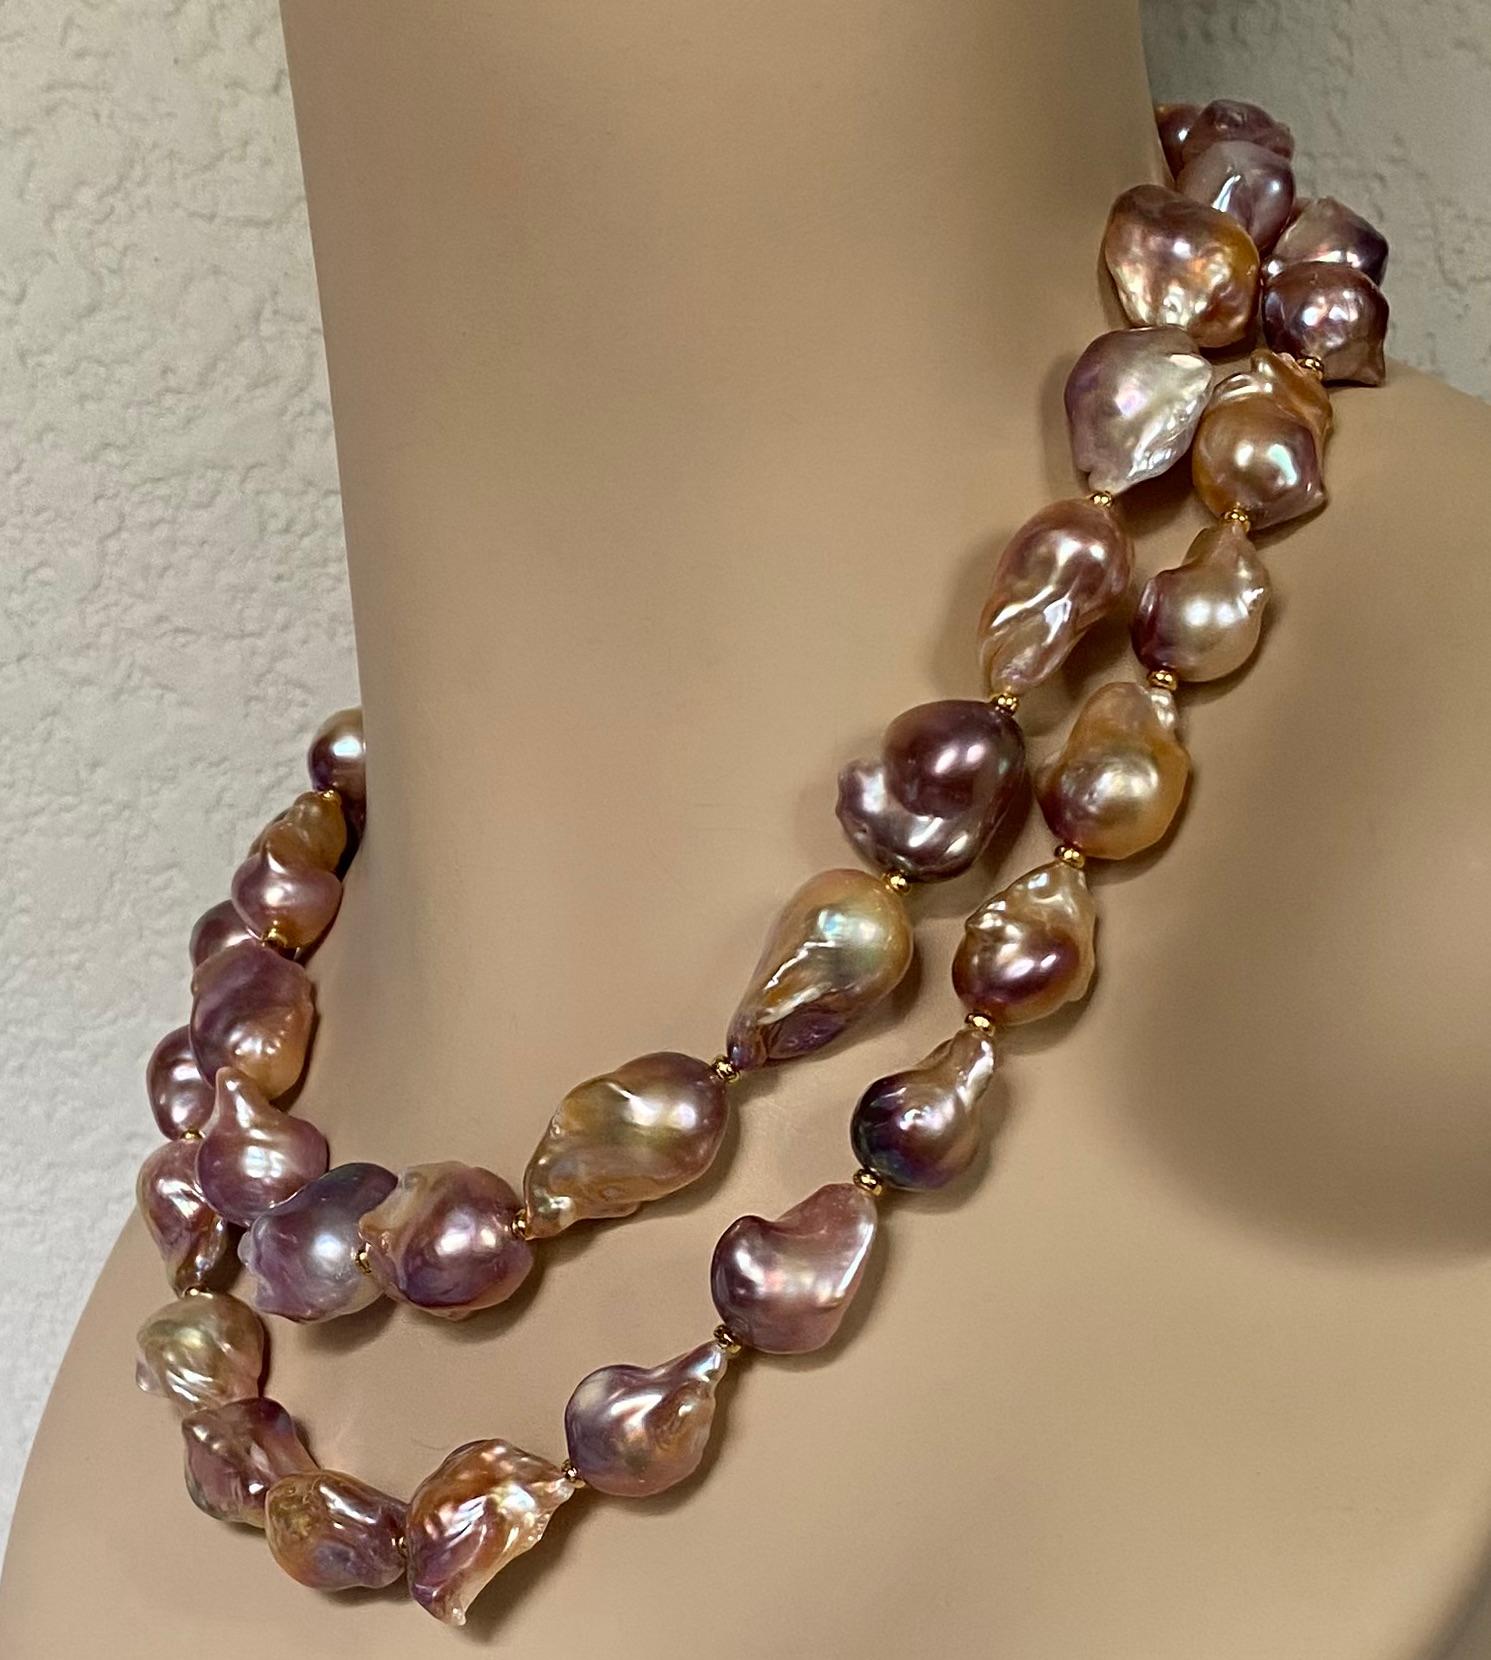 Barocke Perlen sind zu einem dramatischen, doppelreihigen Collier aufgereiht.  Die Perlen (Herkunft: China) sind wegen ihrer ungewöhnlichen Form als 